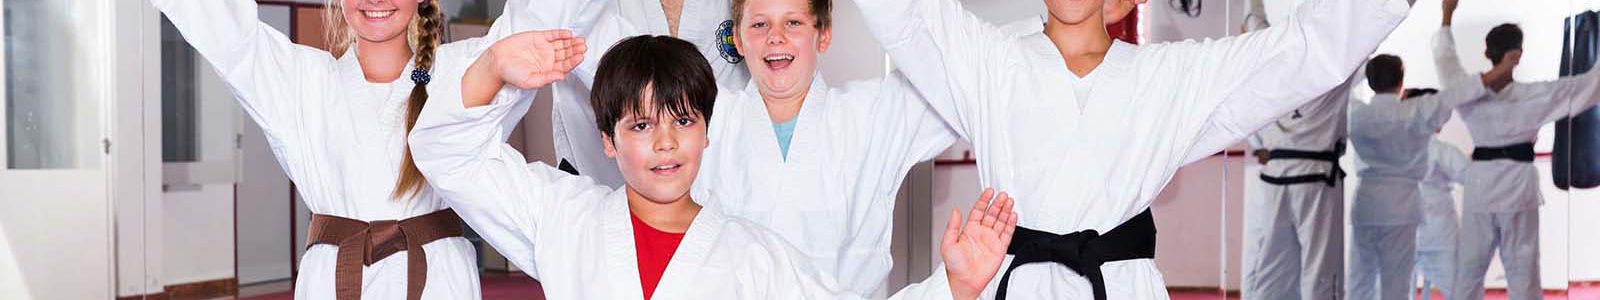 Karate-Anfängerkurs für Jugendliche